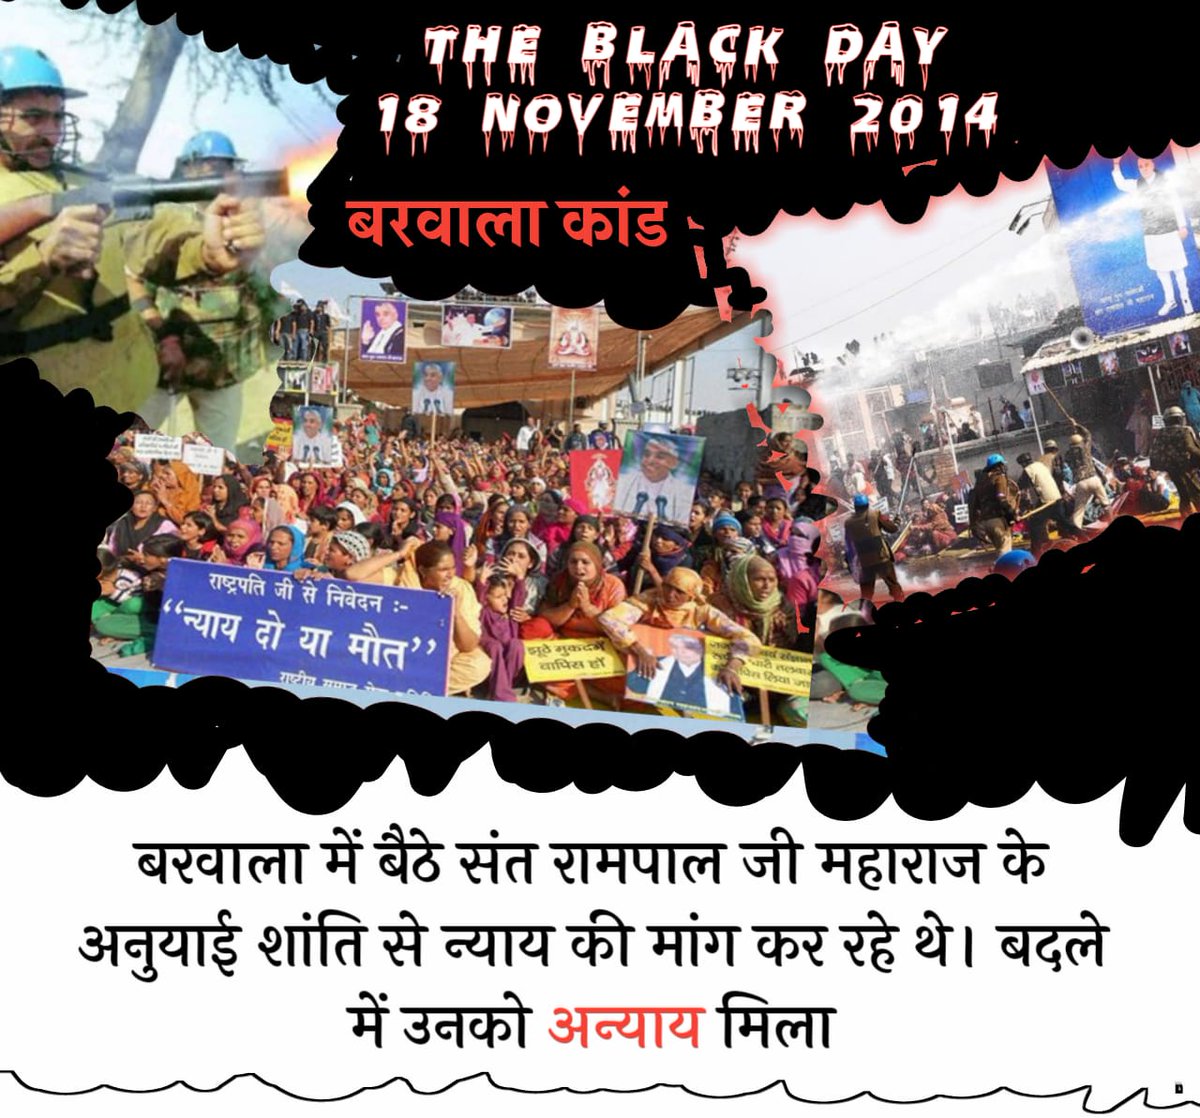 #TheBlackDay_18NOV अंग्रेजो ने भारत में निर्दोषों व् न्याय मांगने वालों पर हमेशा अत्याचार किये लेकिन अब आजाद भारत में ये काले अंग्रेज अत्याचार कर रहे है